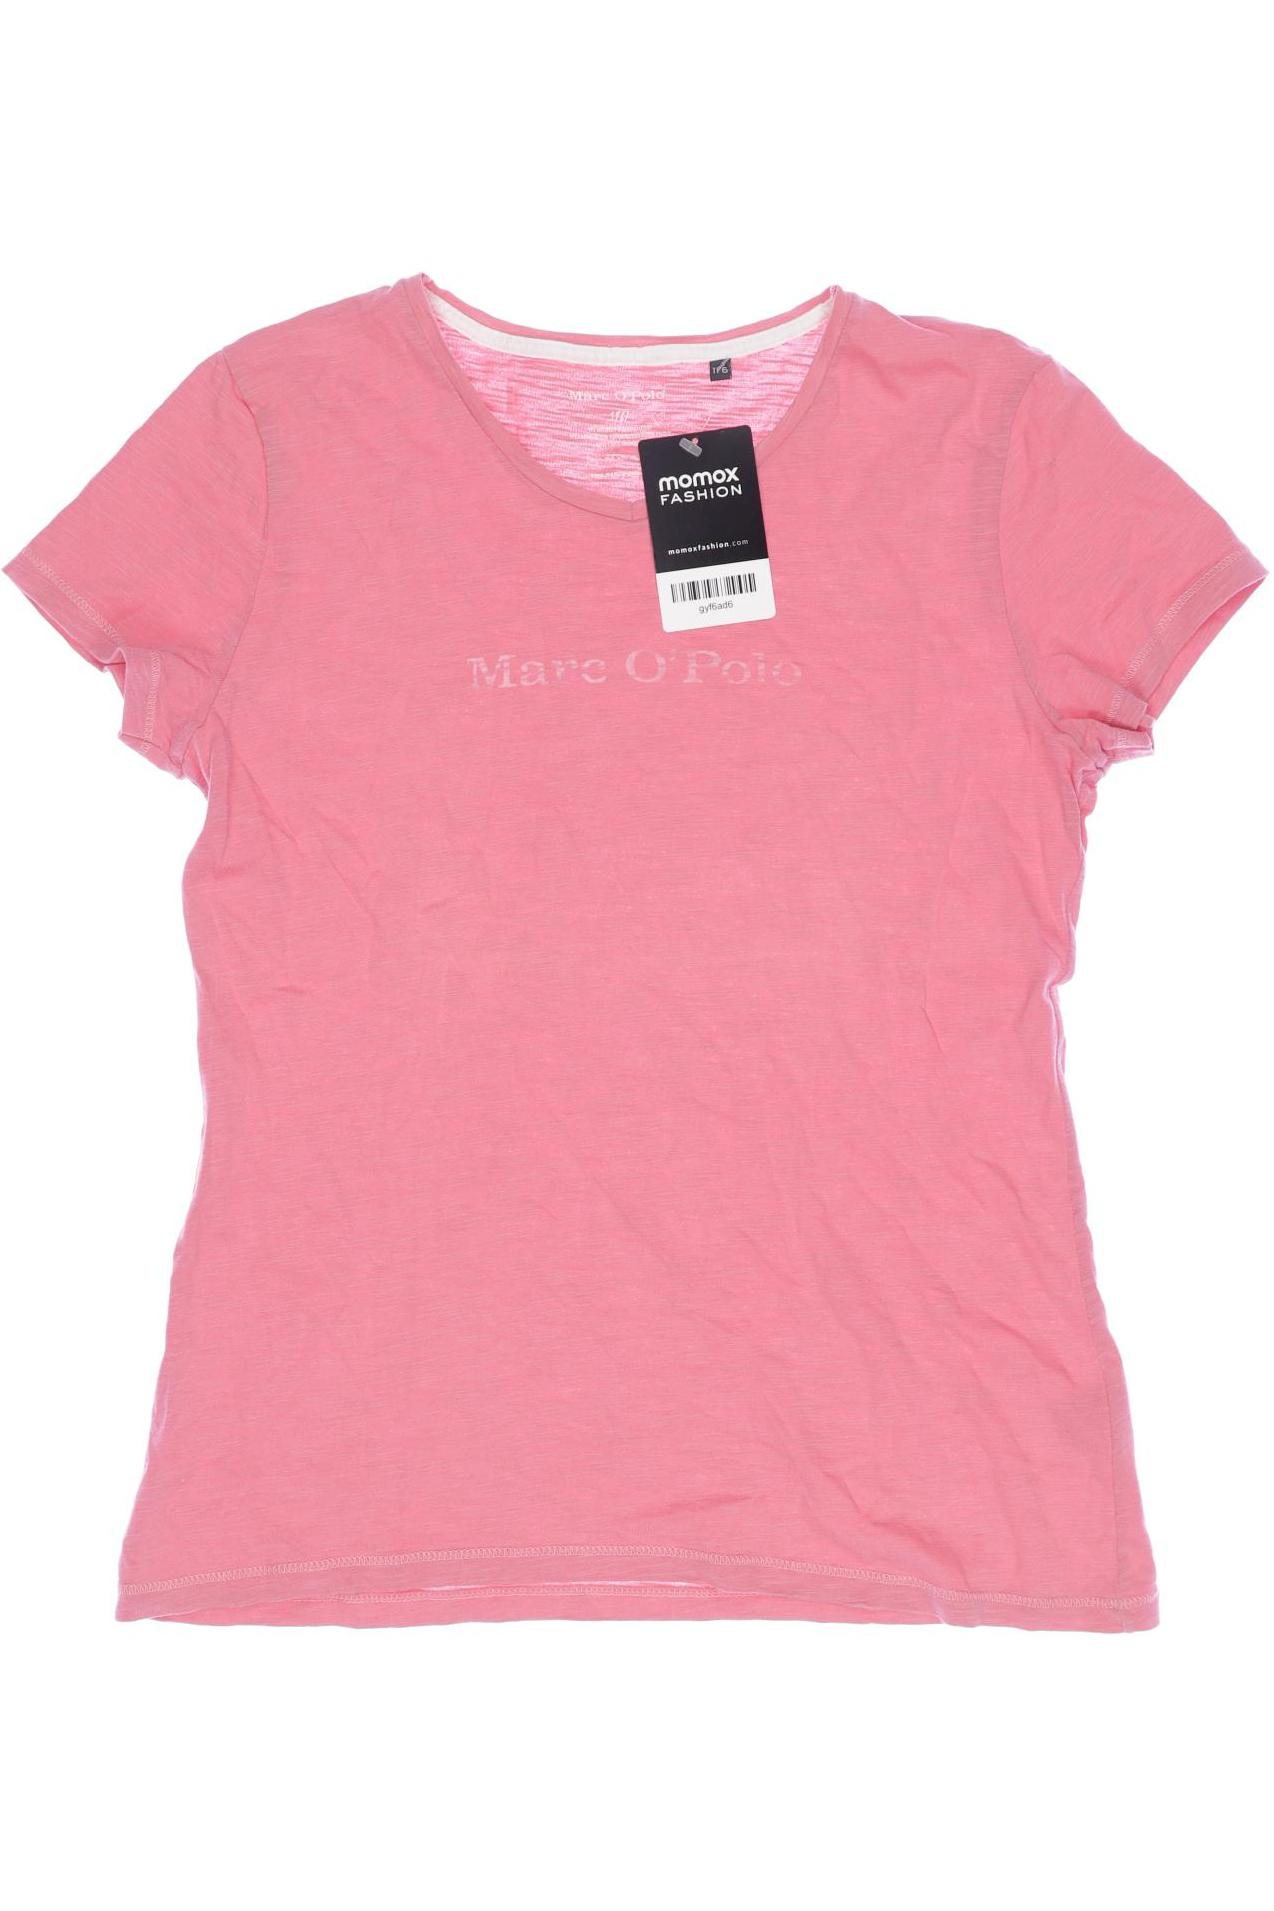 Marc O Polo Mädchen T-Shirt, pink von Marc O Polo